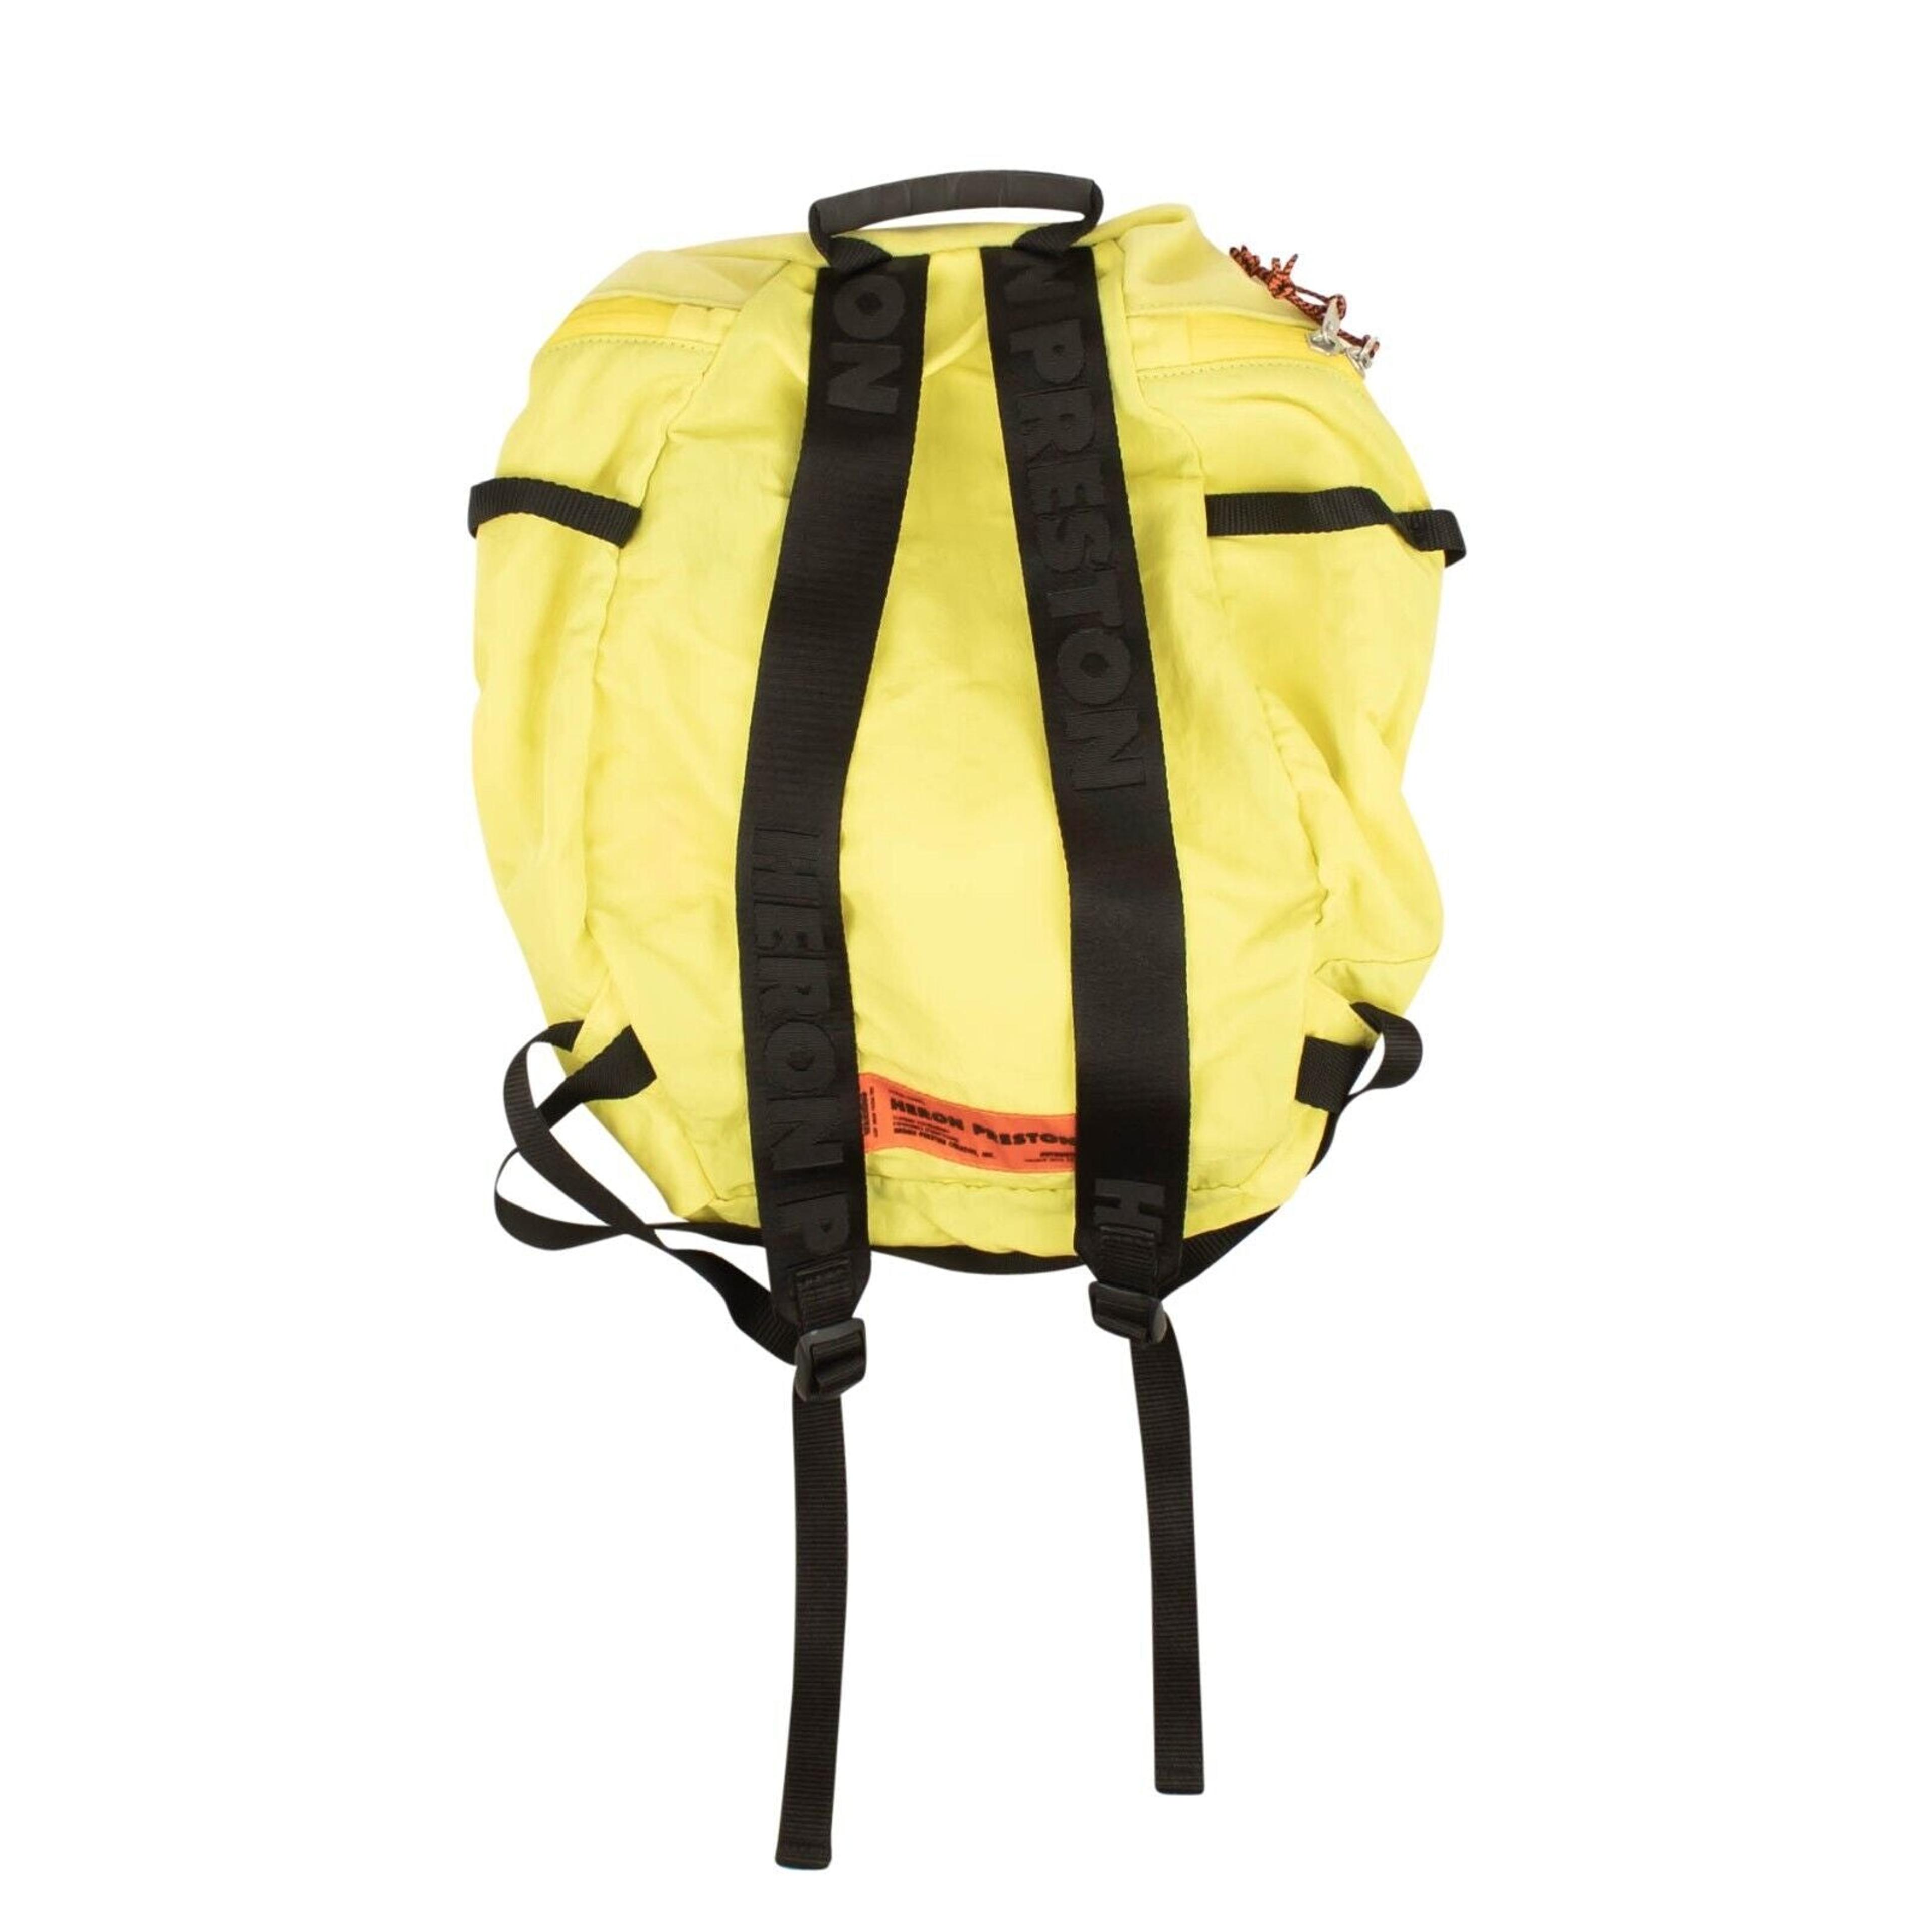 Alternate View 2 of Yellow Nylon Mesh Backpack